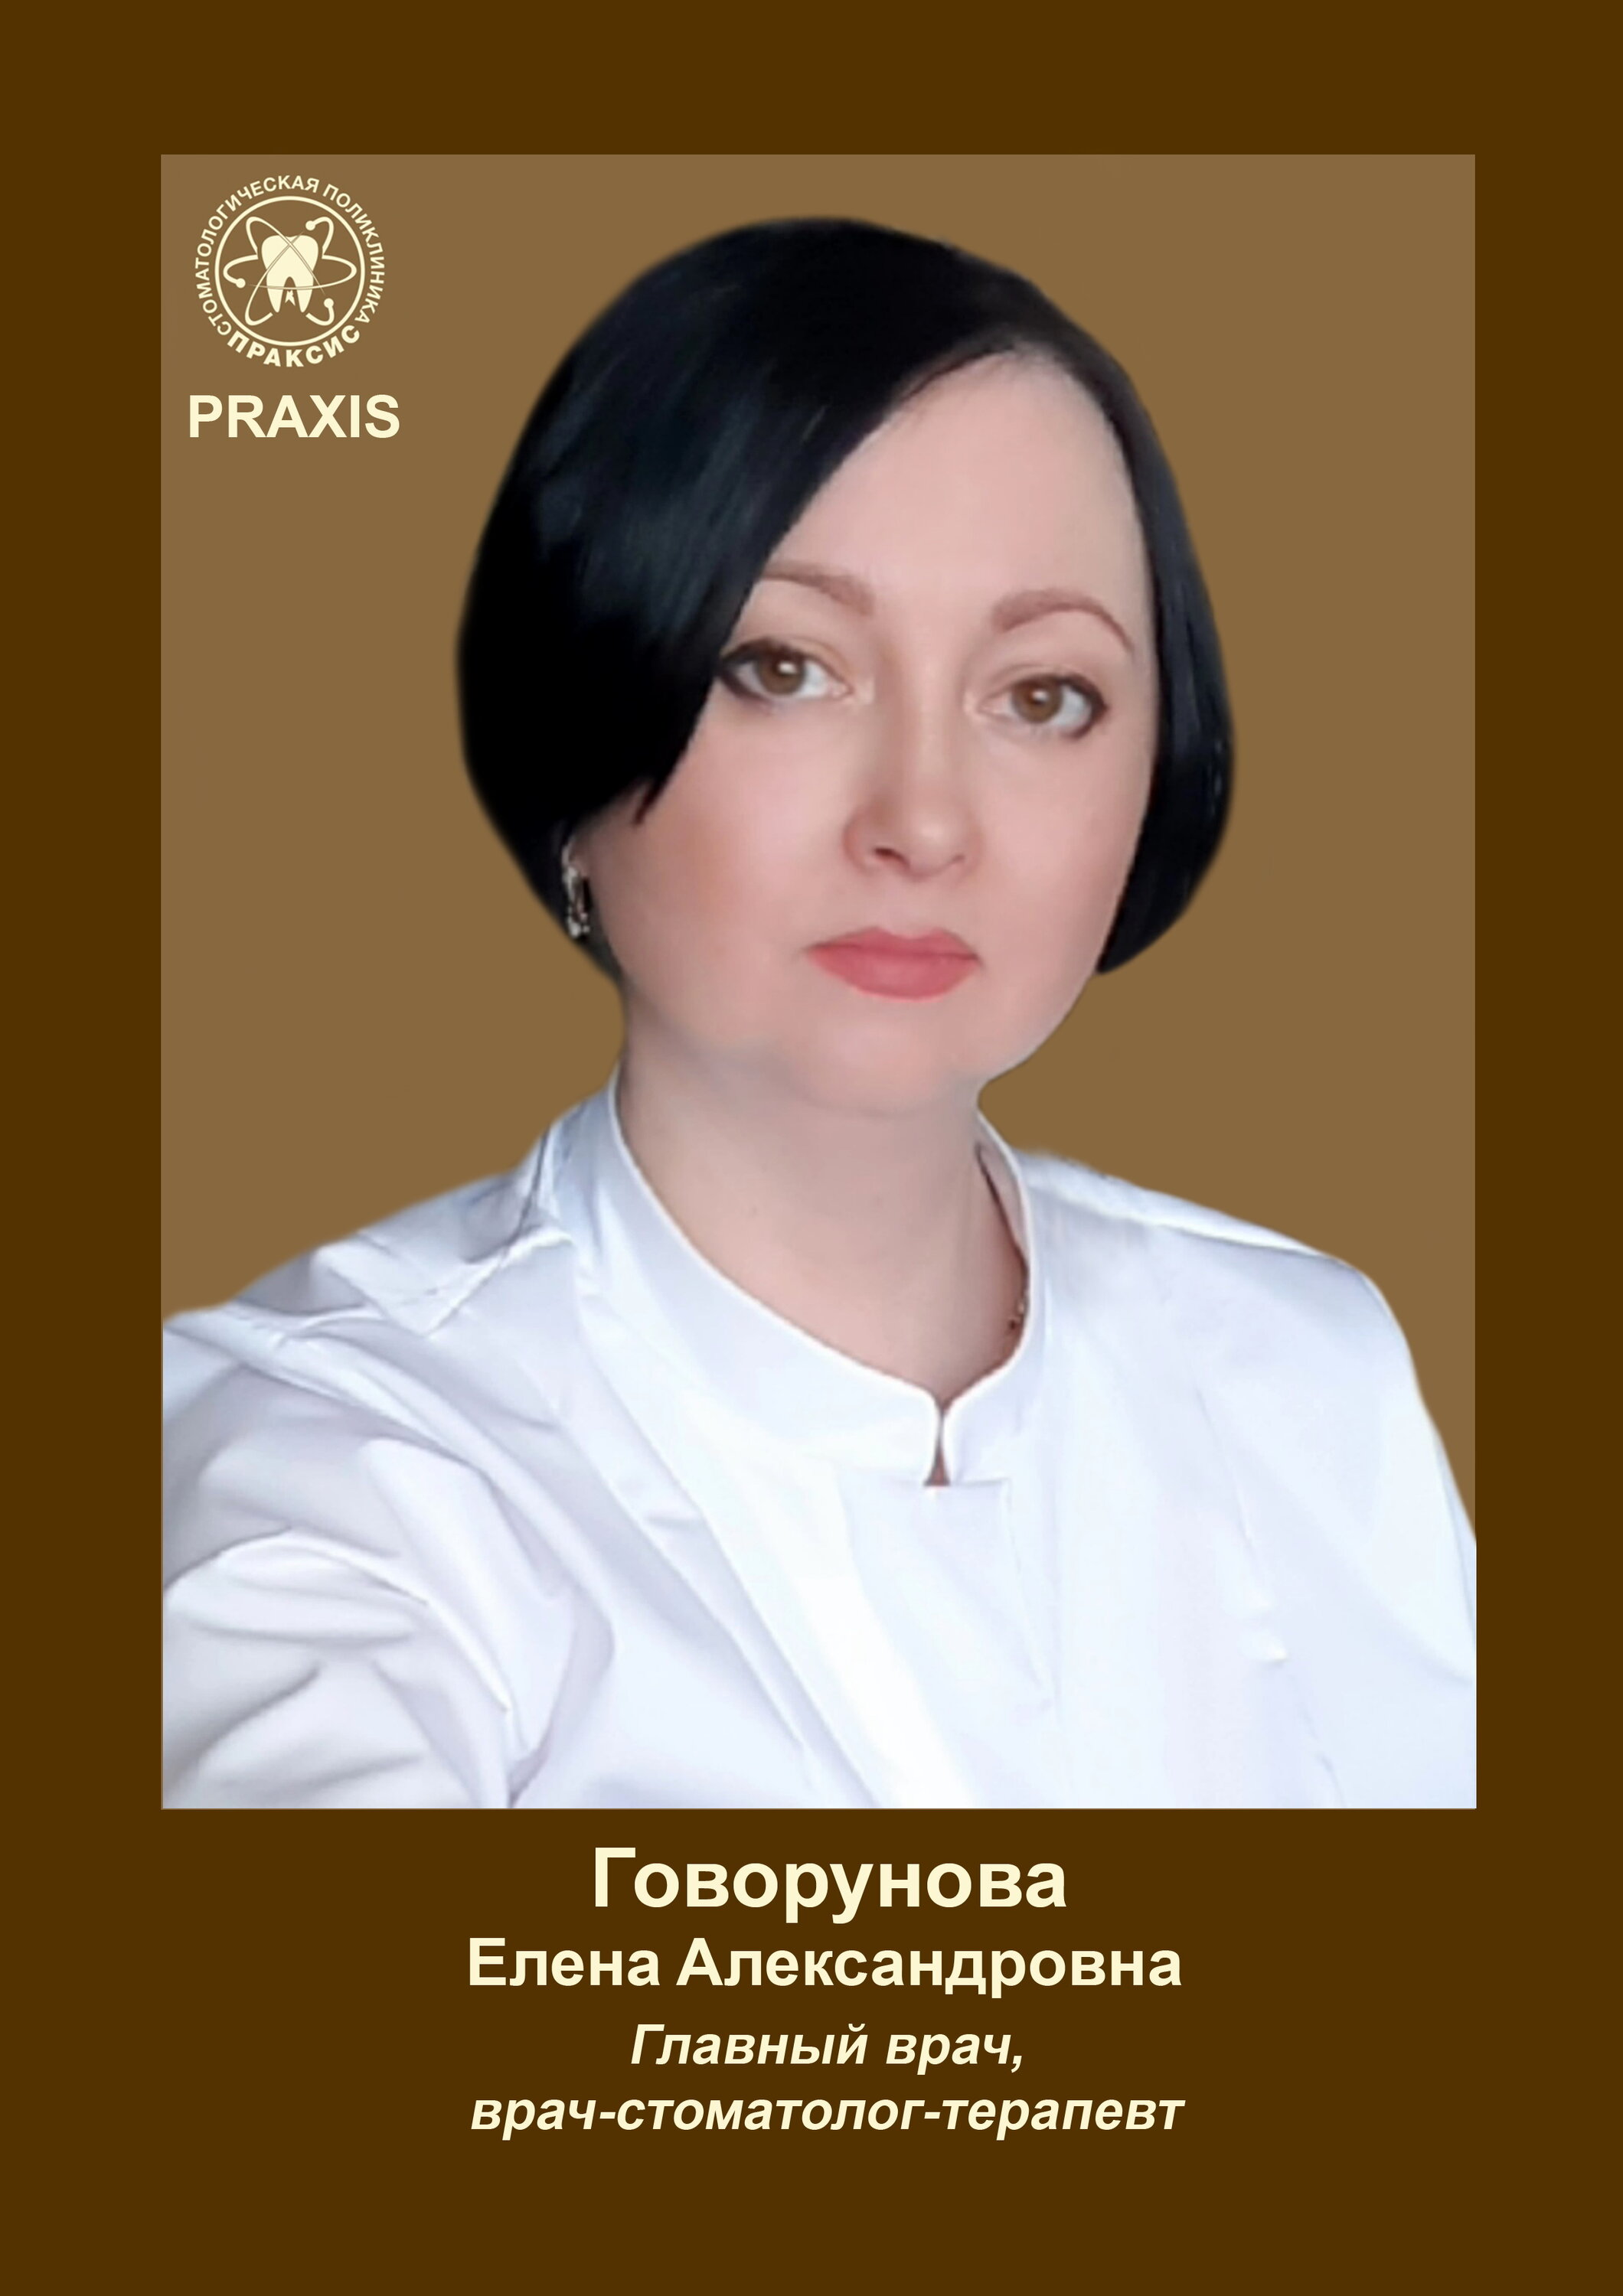 Праксис Саратов стоматология